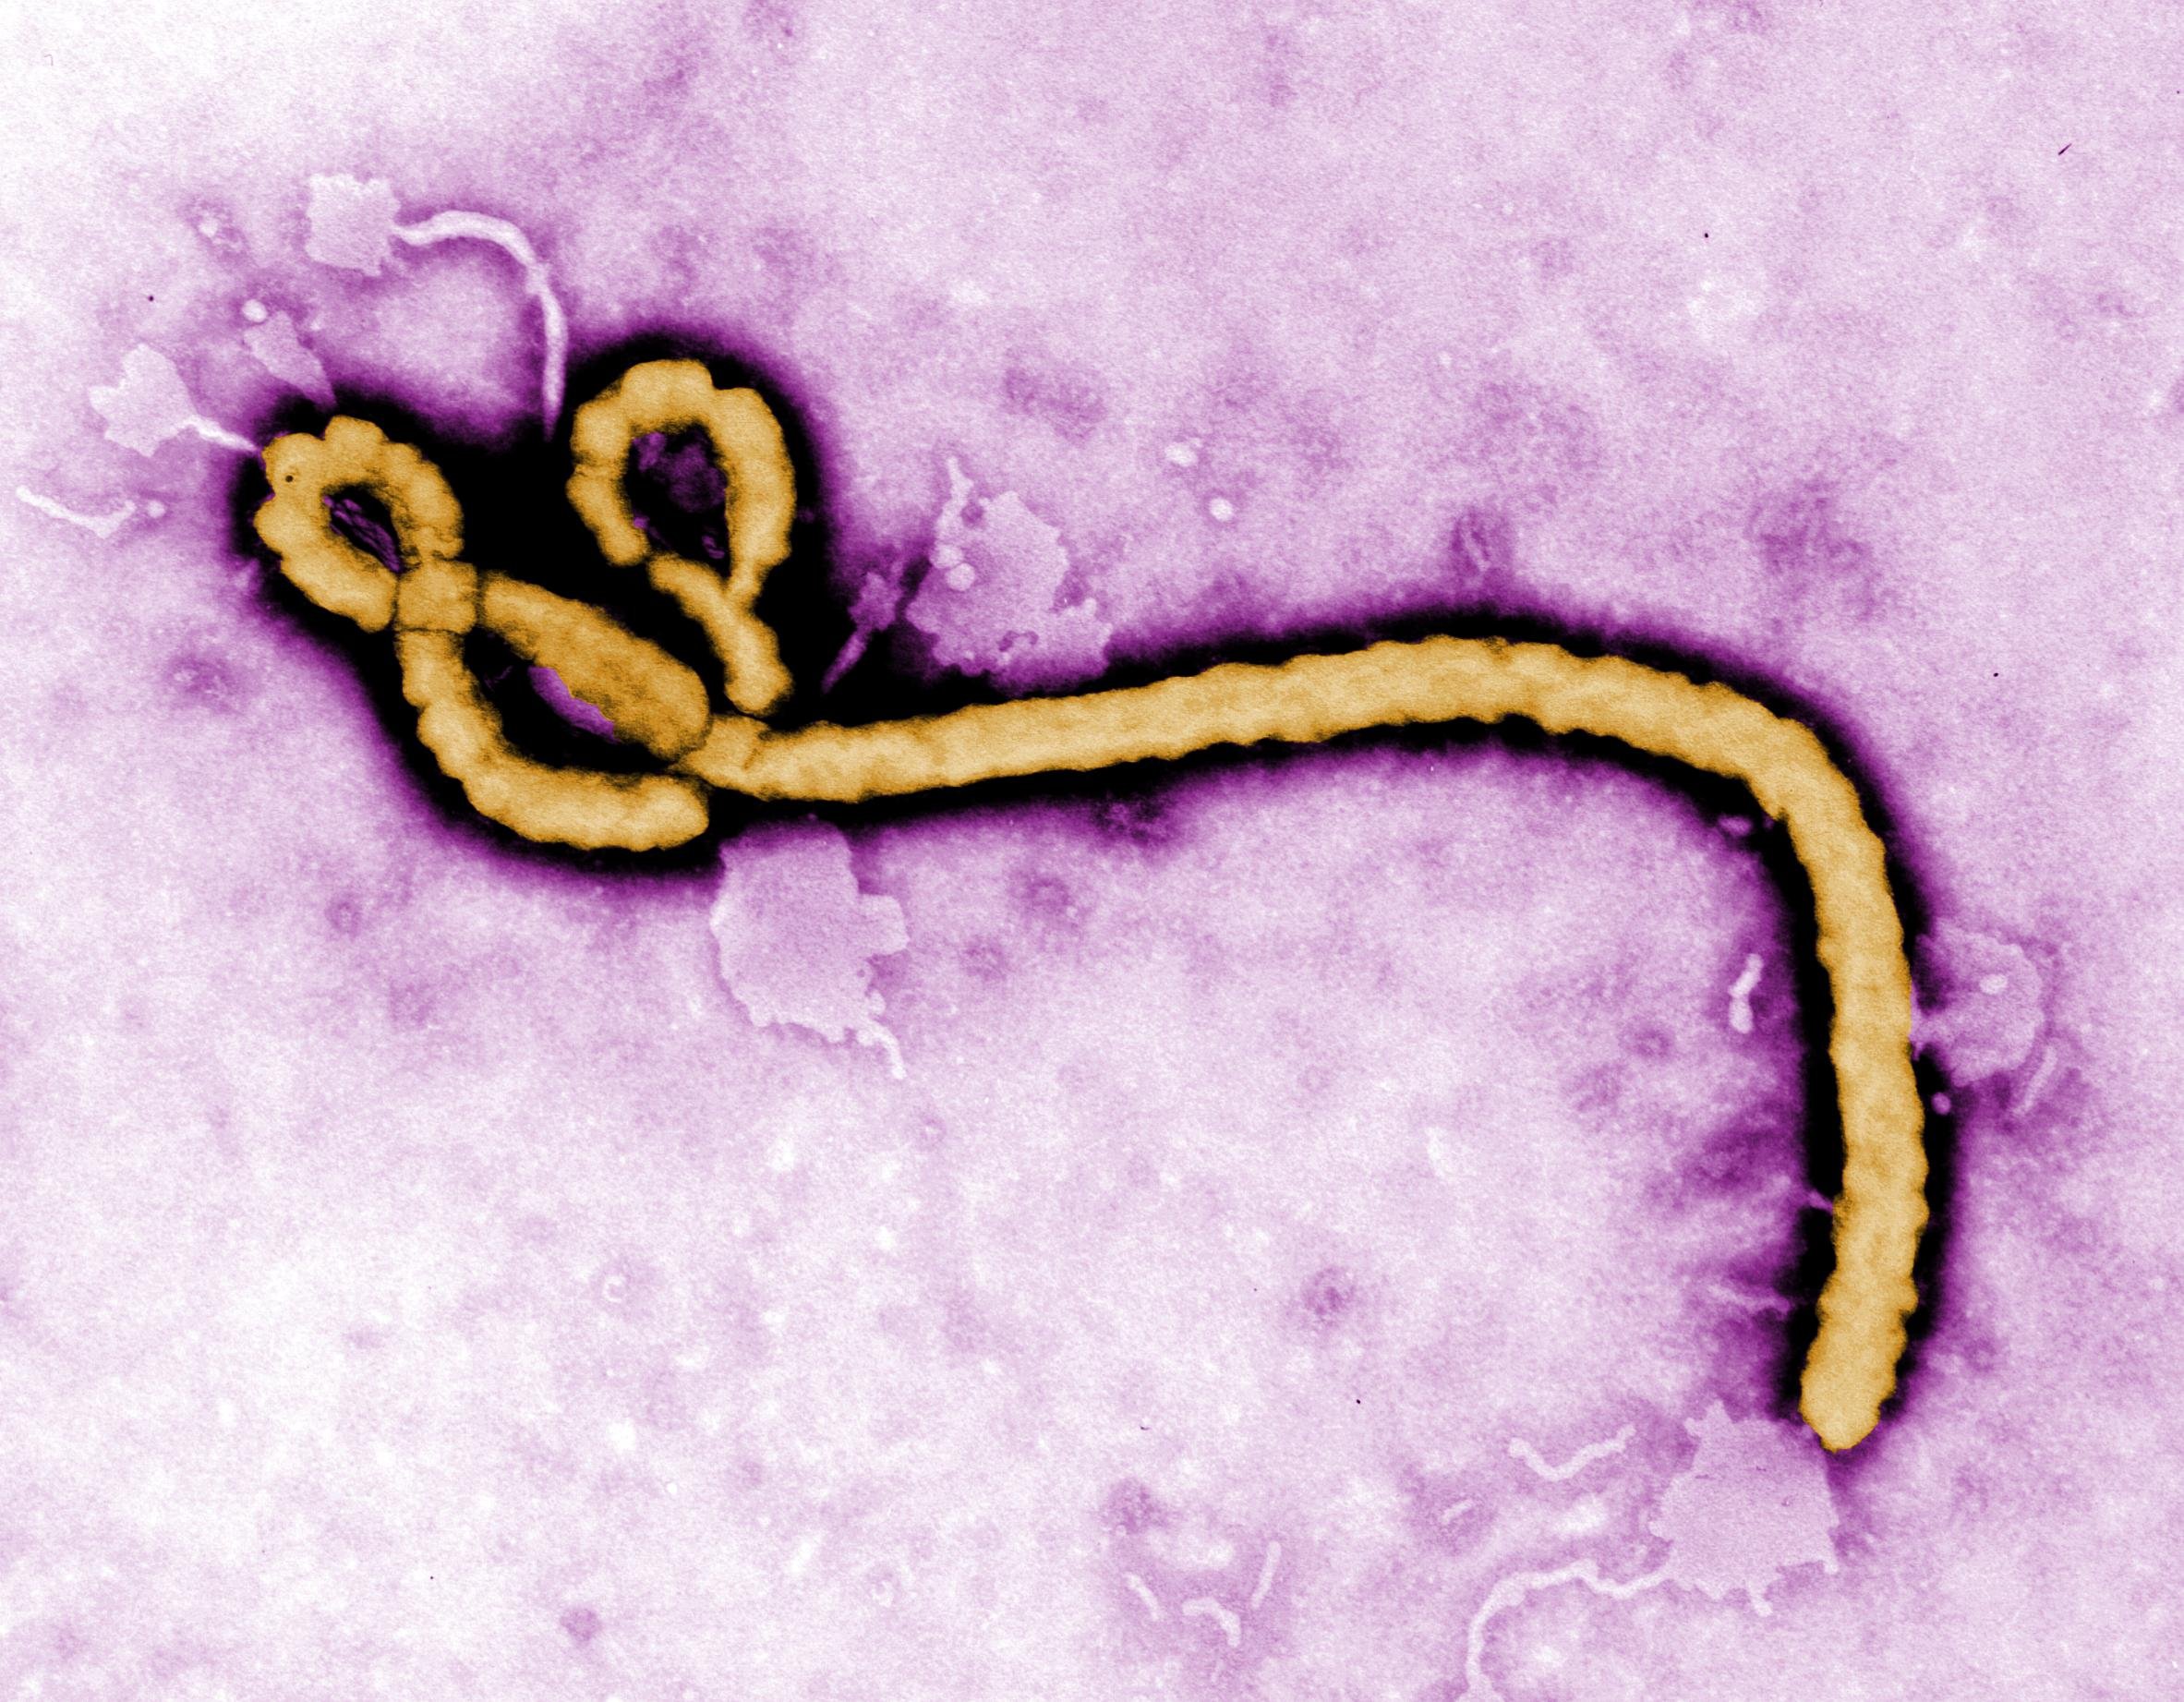 Zaire ebolavirus. Фото: Вікіпедія